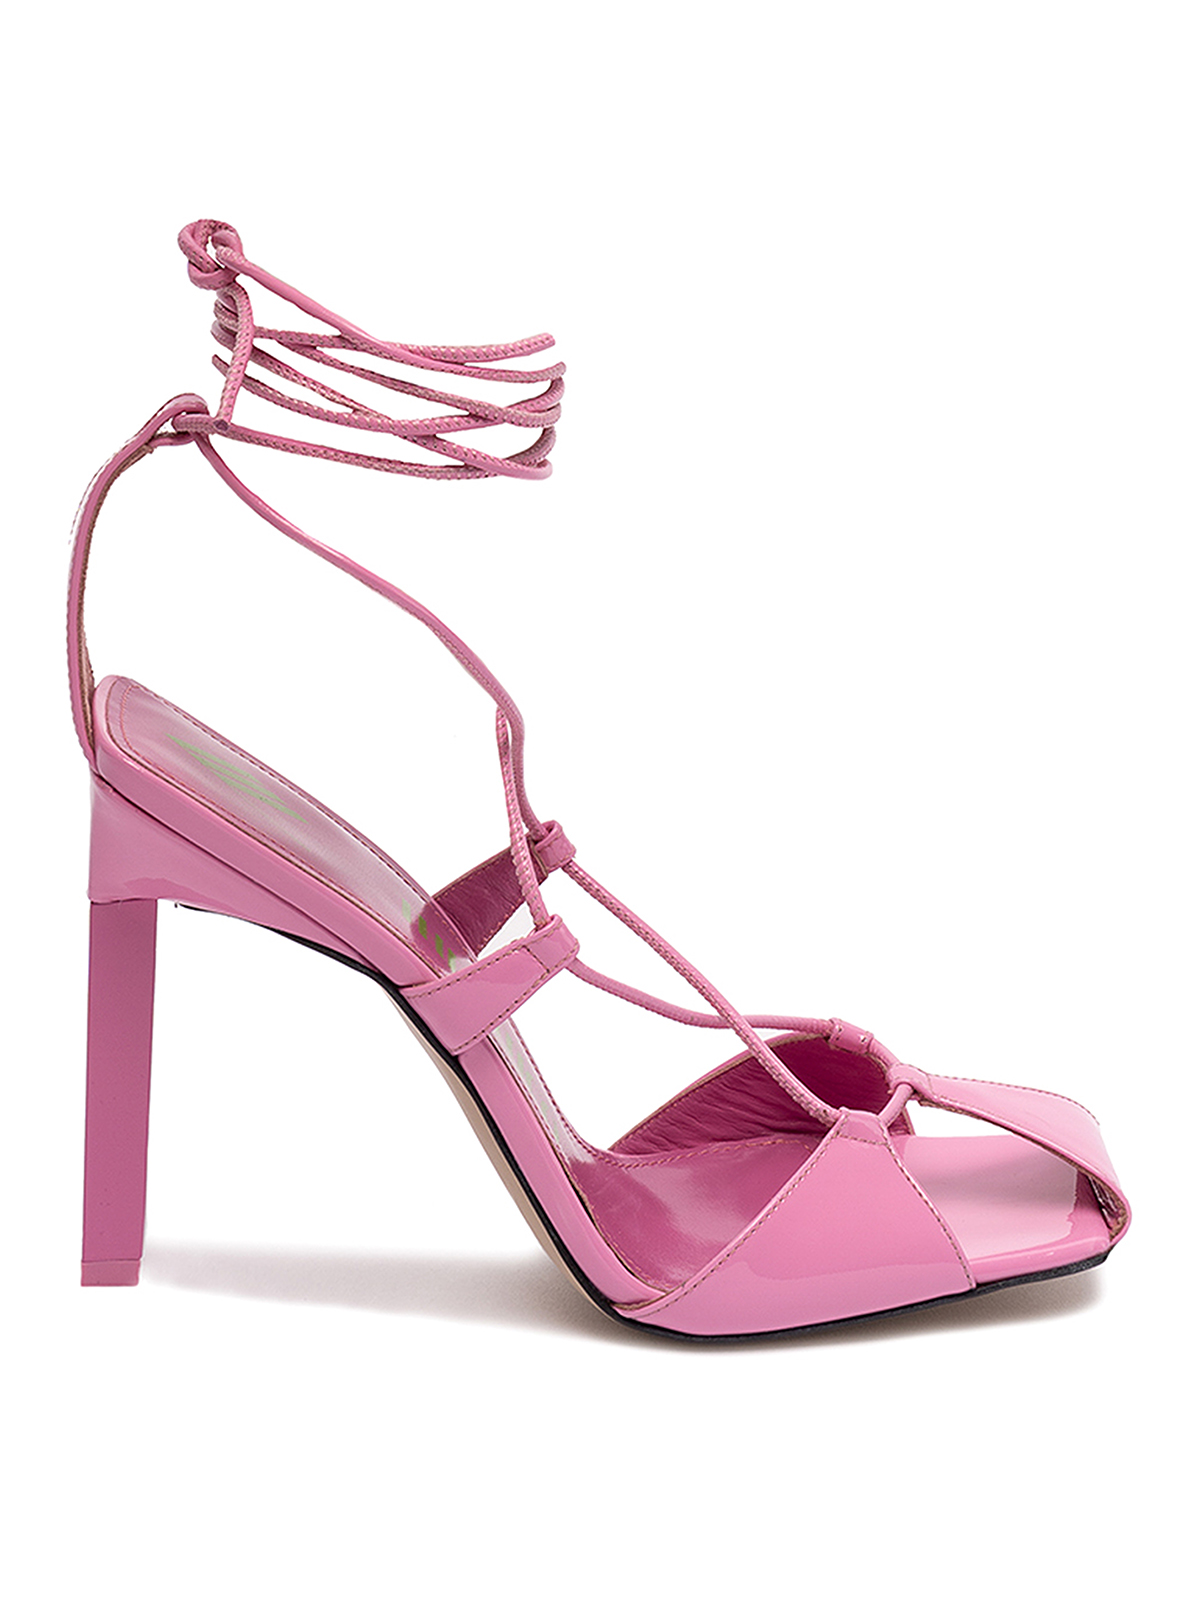 Attico Zapatos Con Cordones - Rosado Claro In Light Pink